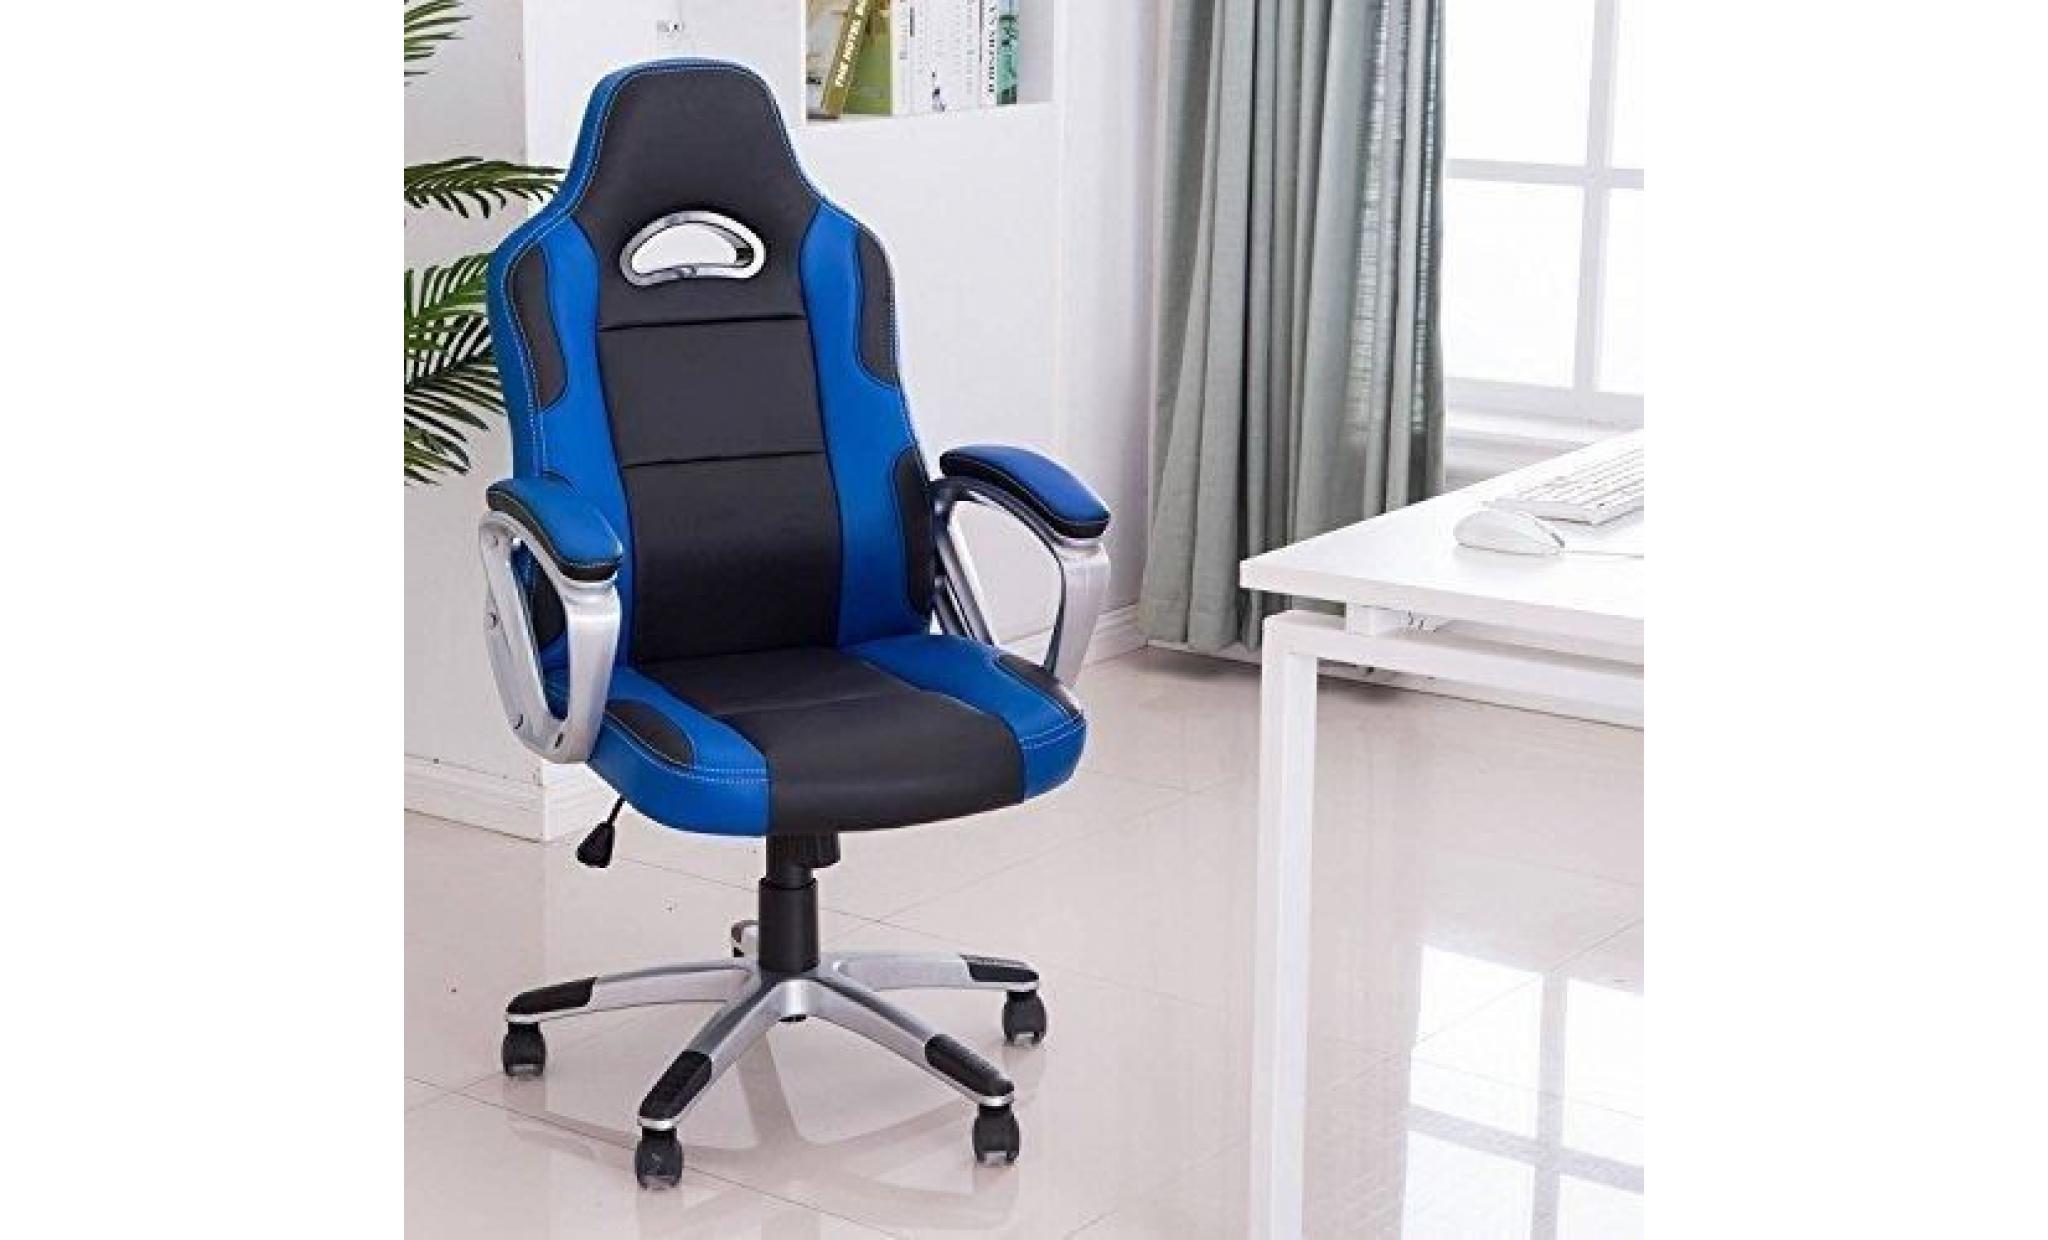 racing chaise de bureau pu   gaming chaise   fauteuil siège gaming   hauteur réglable  vert   intimate wm heart pas cher